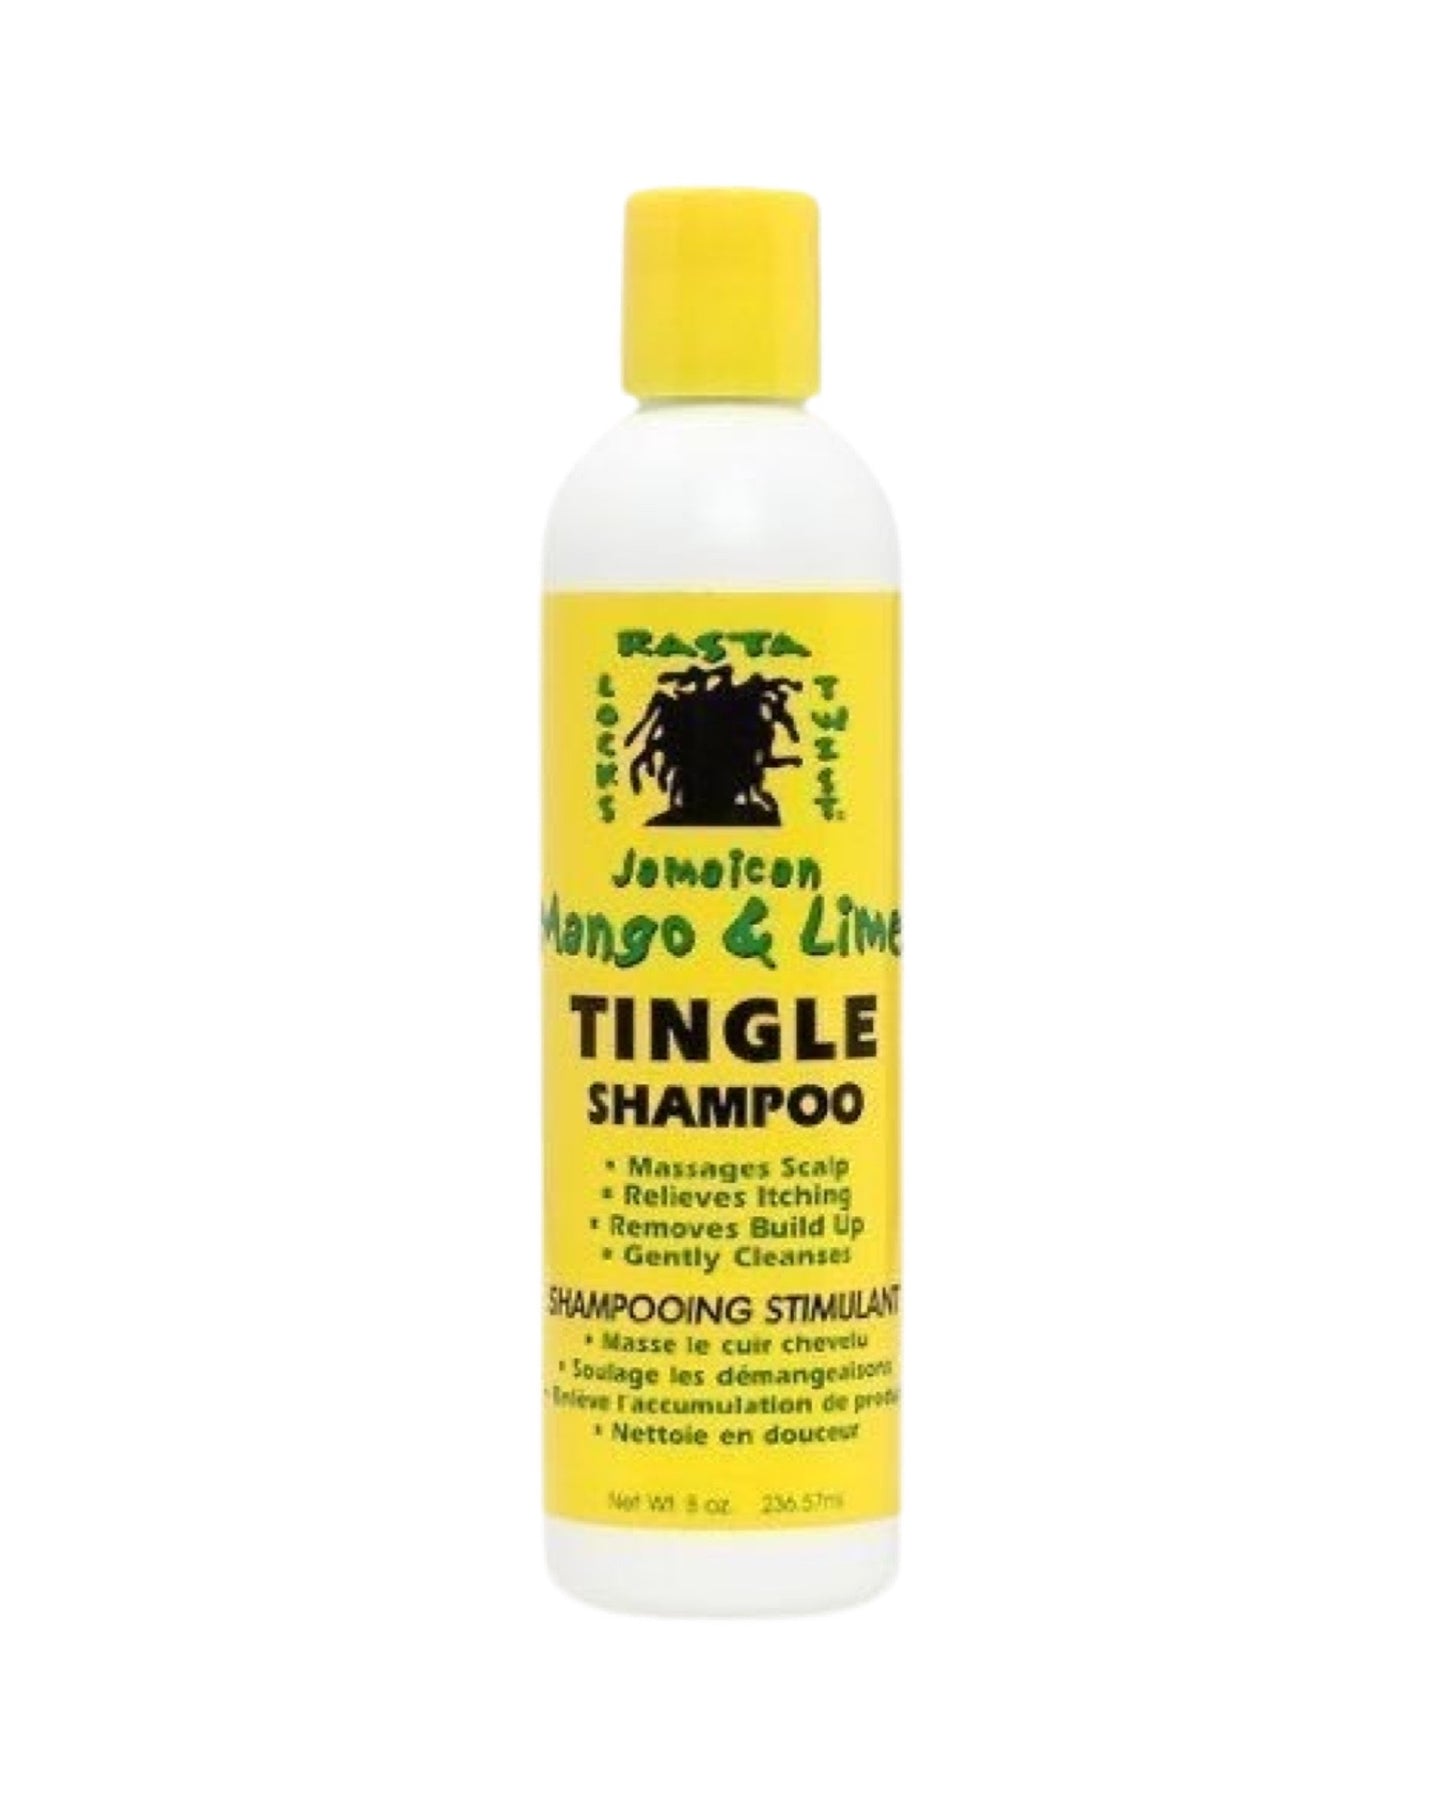 Jamiacan Mango & Lime Tingle Shampoo